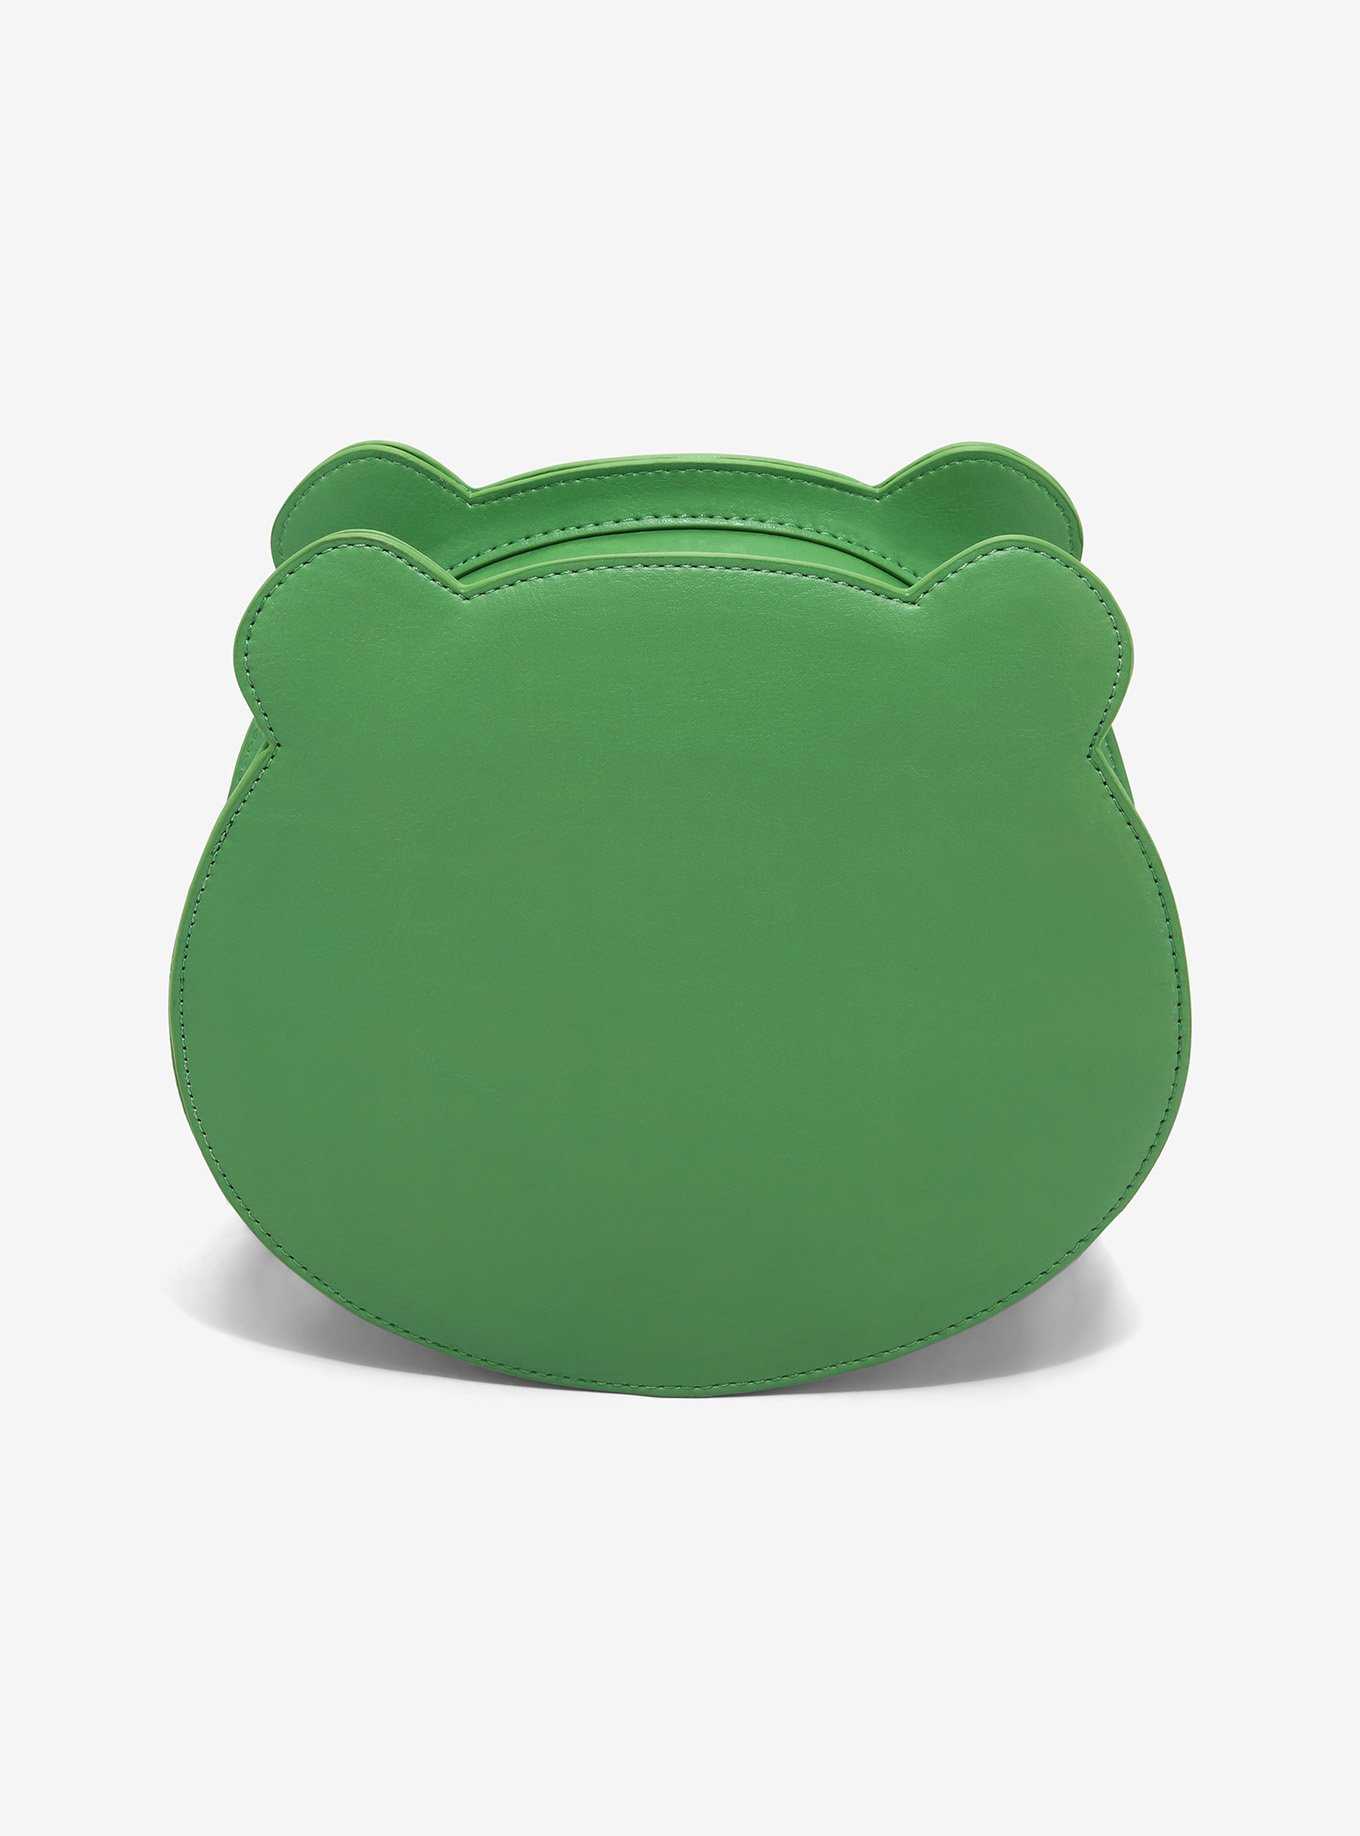 Frog Pin Collector Figural Crossbody Bag, , hi-res